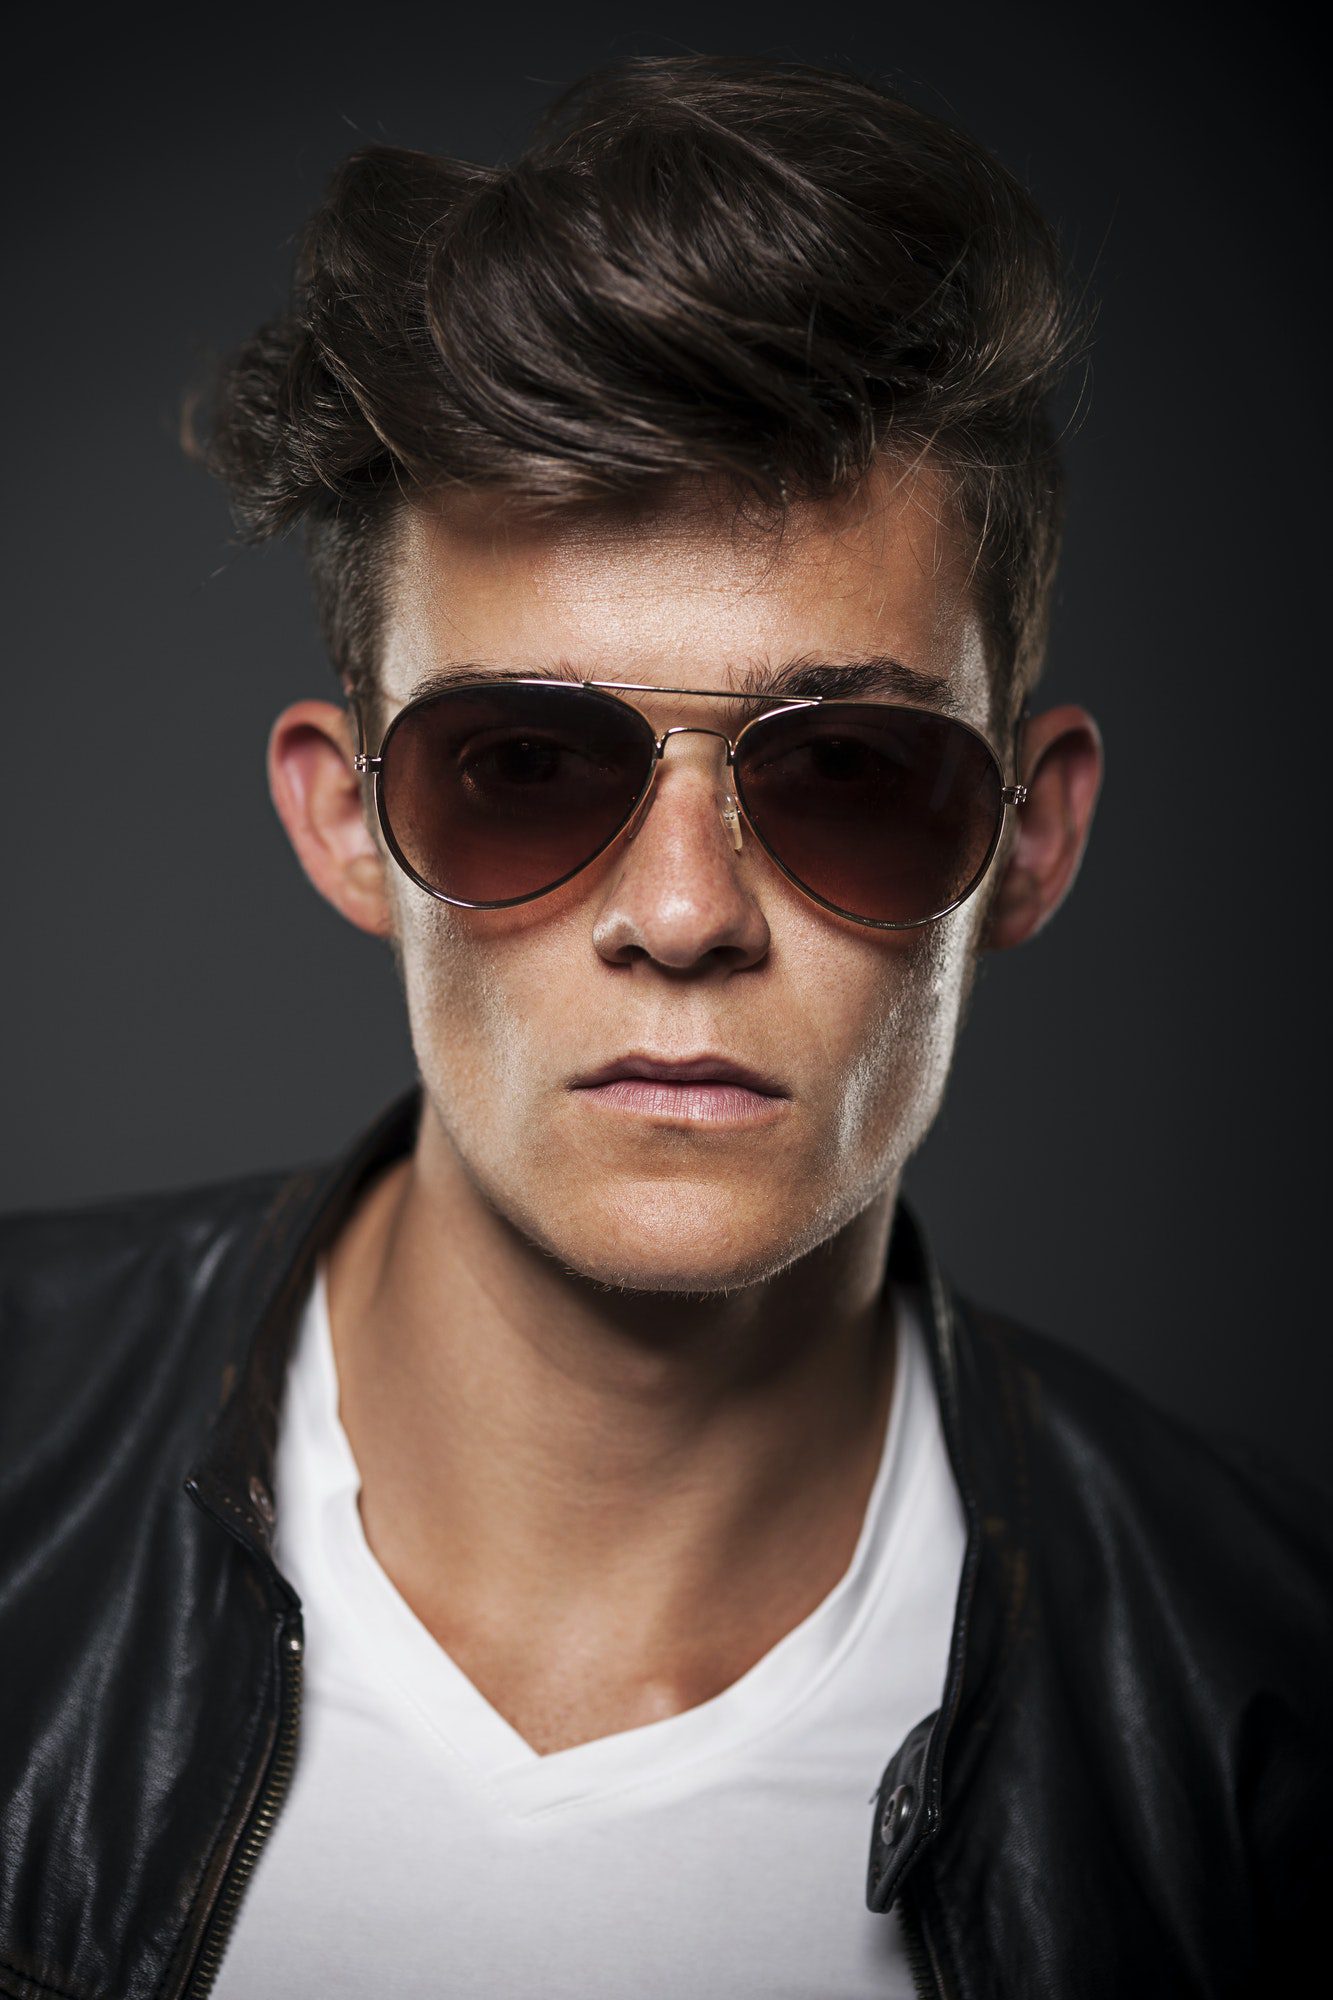 portrait-of-male-model-wearing-sunglasses.jpg